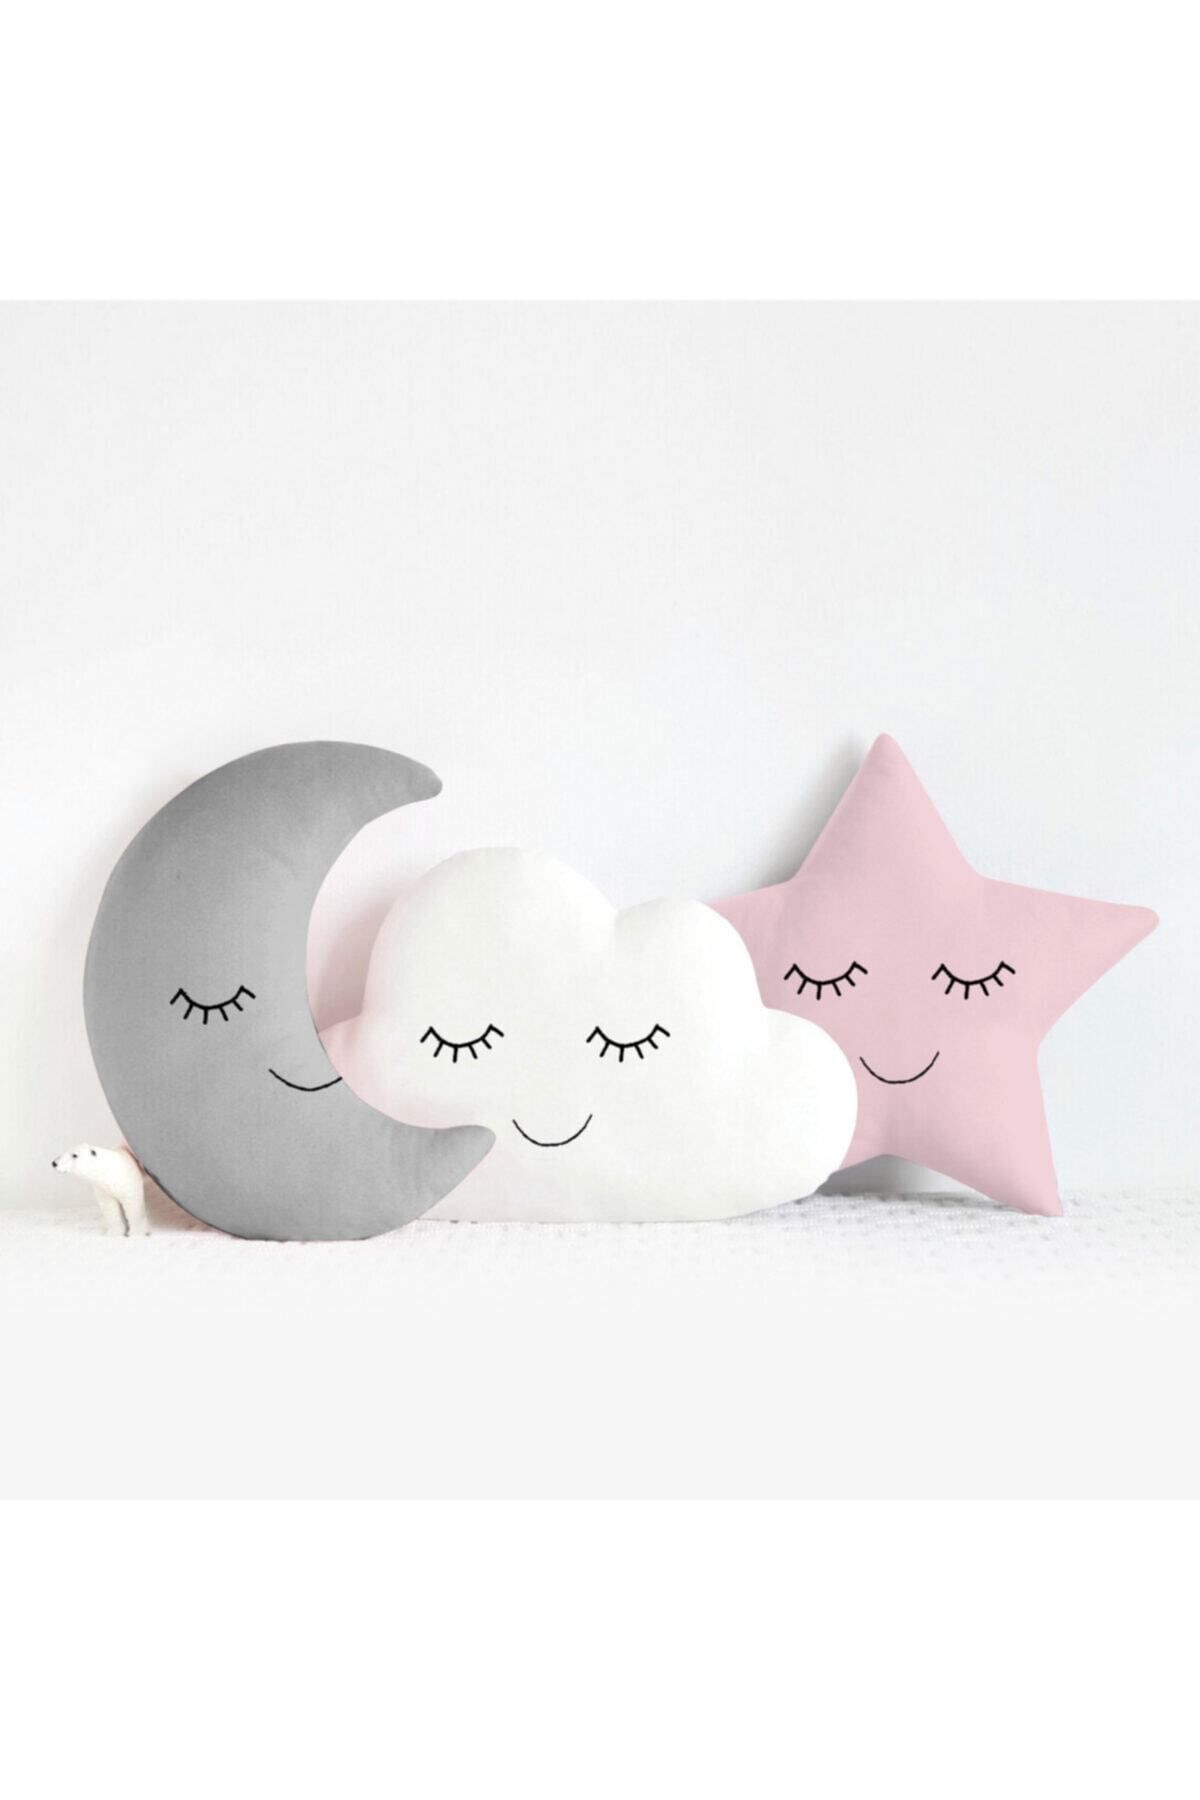 Miomundo Bebek Ve Çocuk Odası Ay-yıldız-bulut Yastık Seti Uyku Arkadaşları Üçlü Kombin Gri Beyaz Pembe